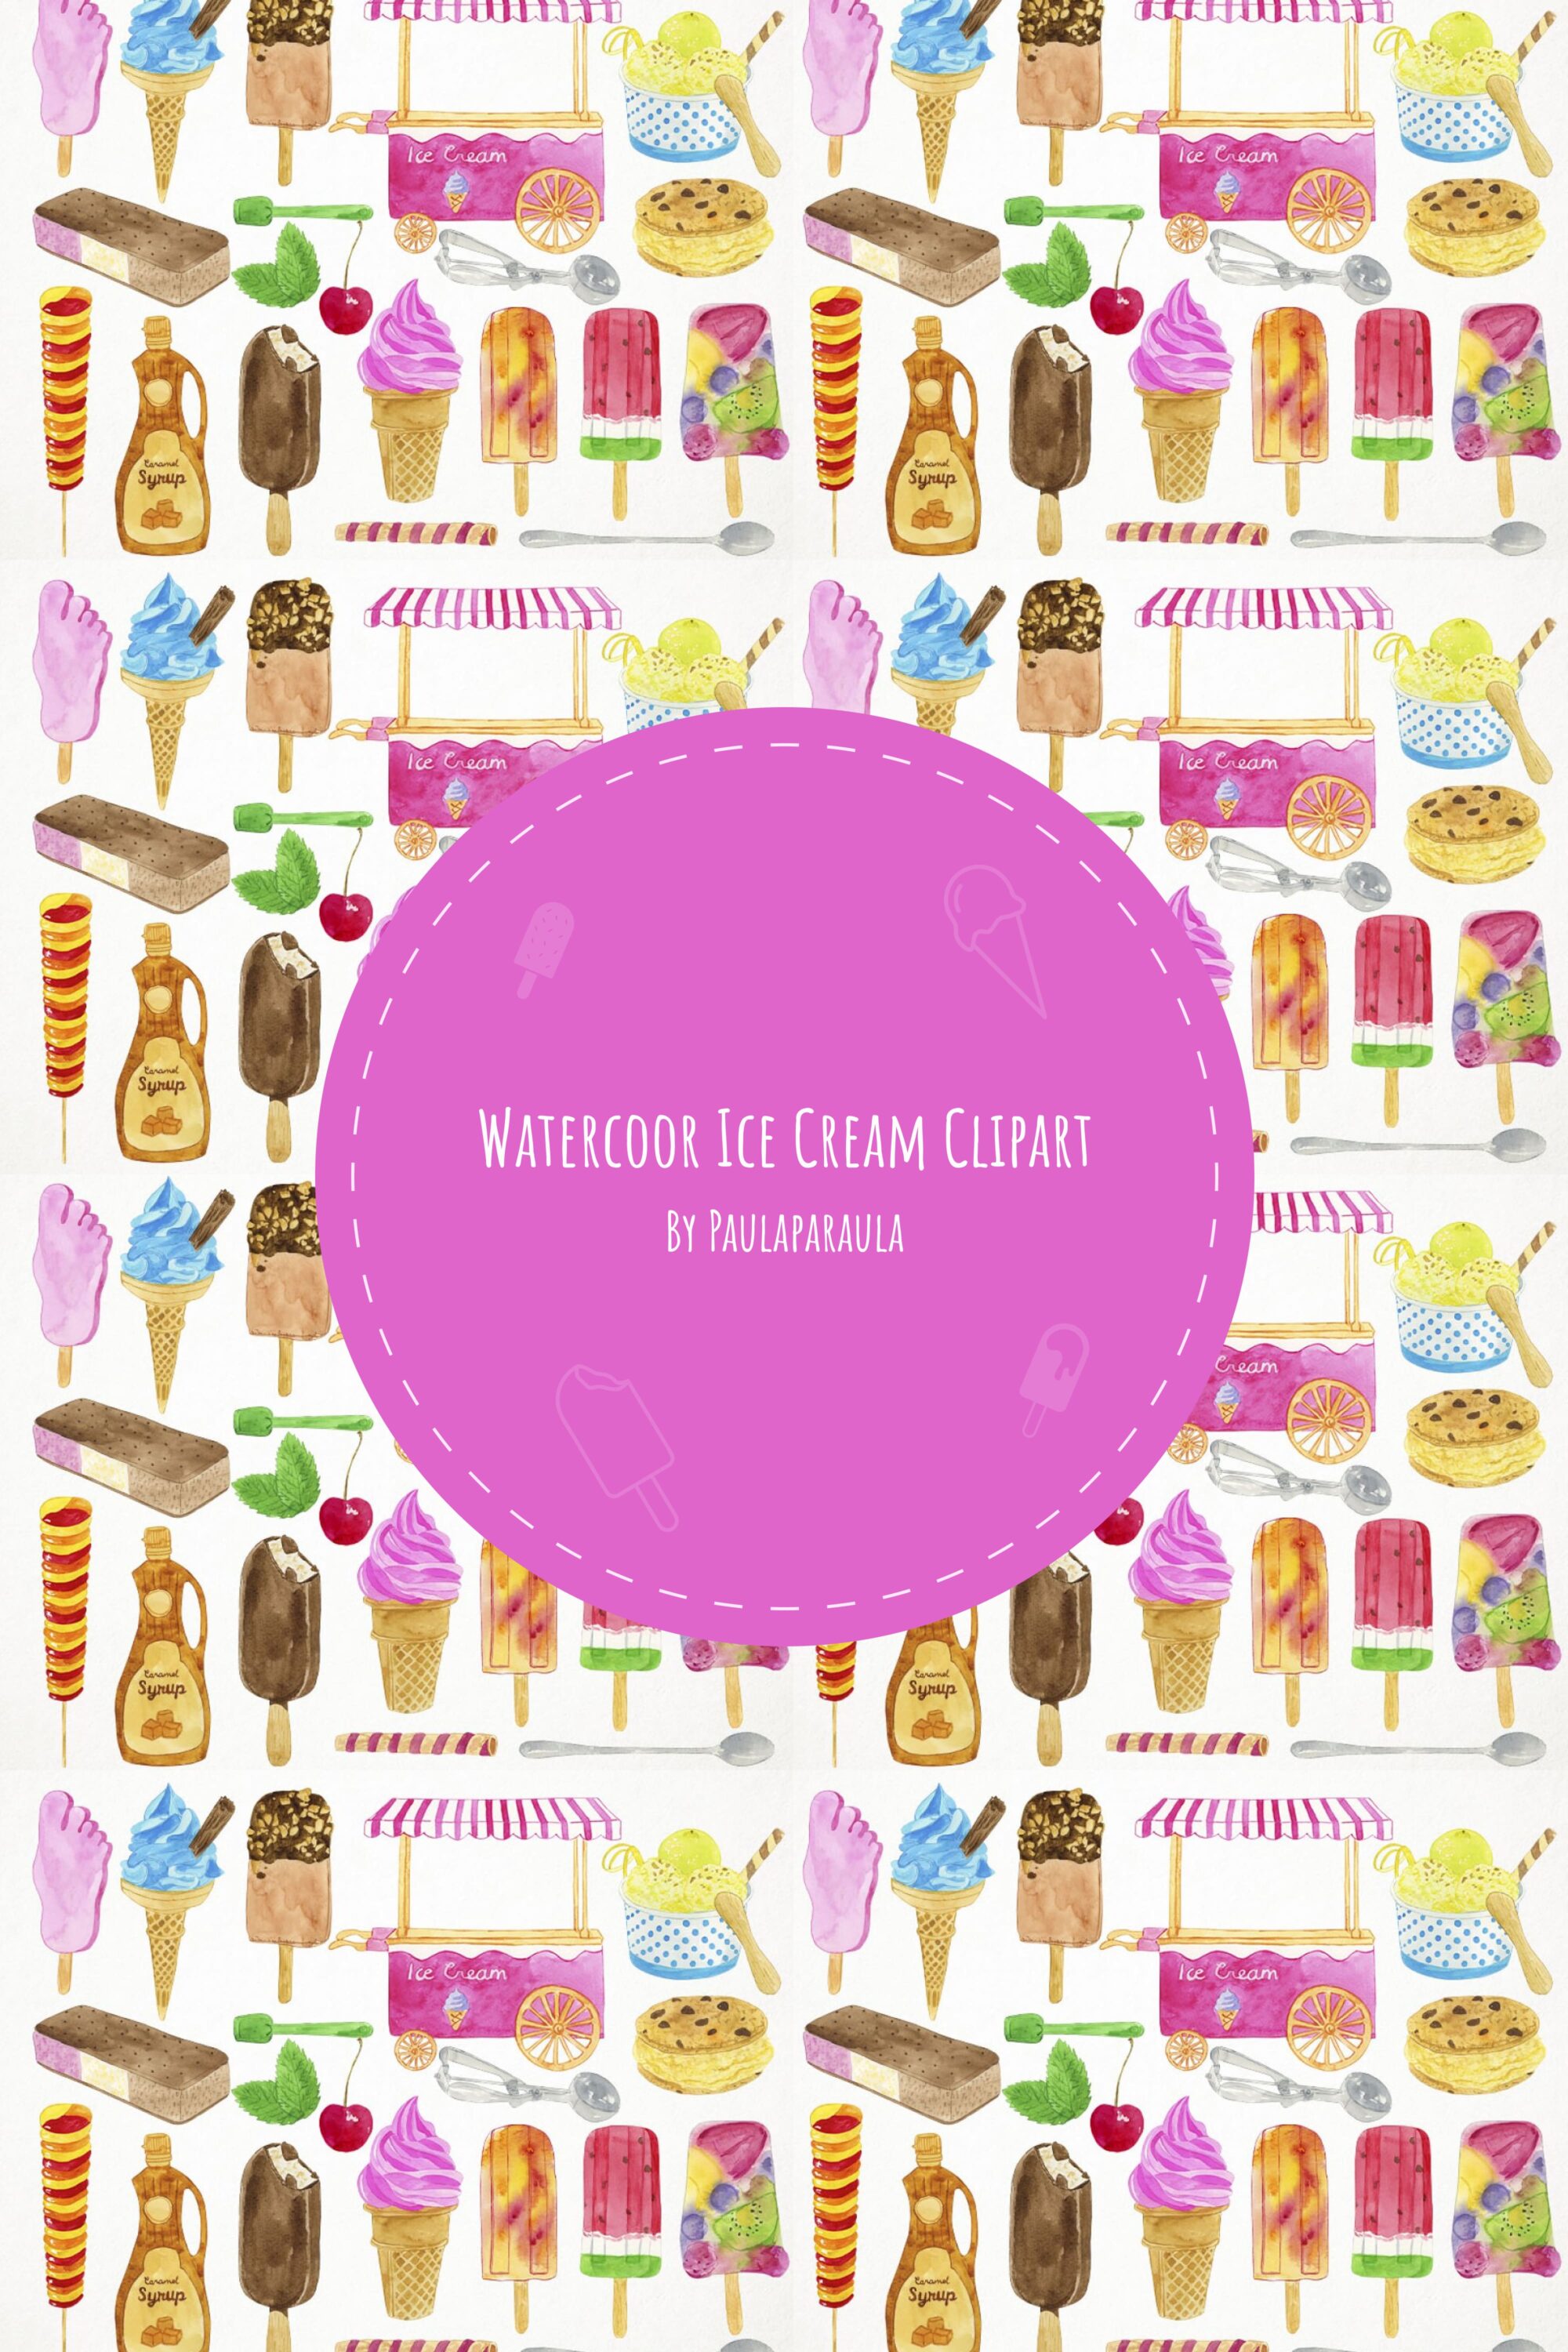 watercoor ice cream clipart 03